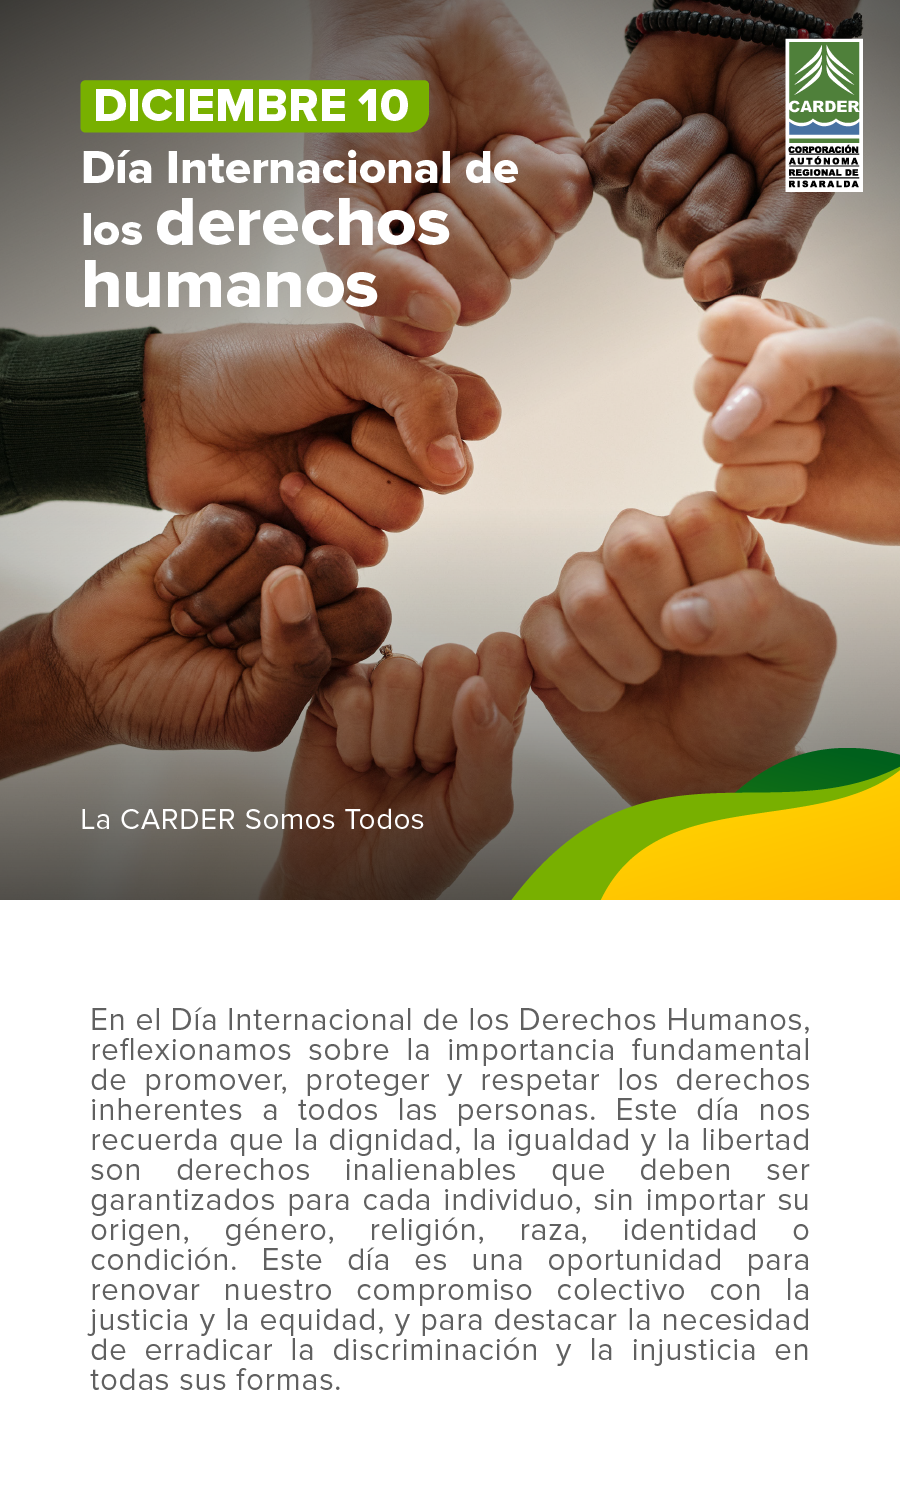 Día Internacional de los derechos humanos.